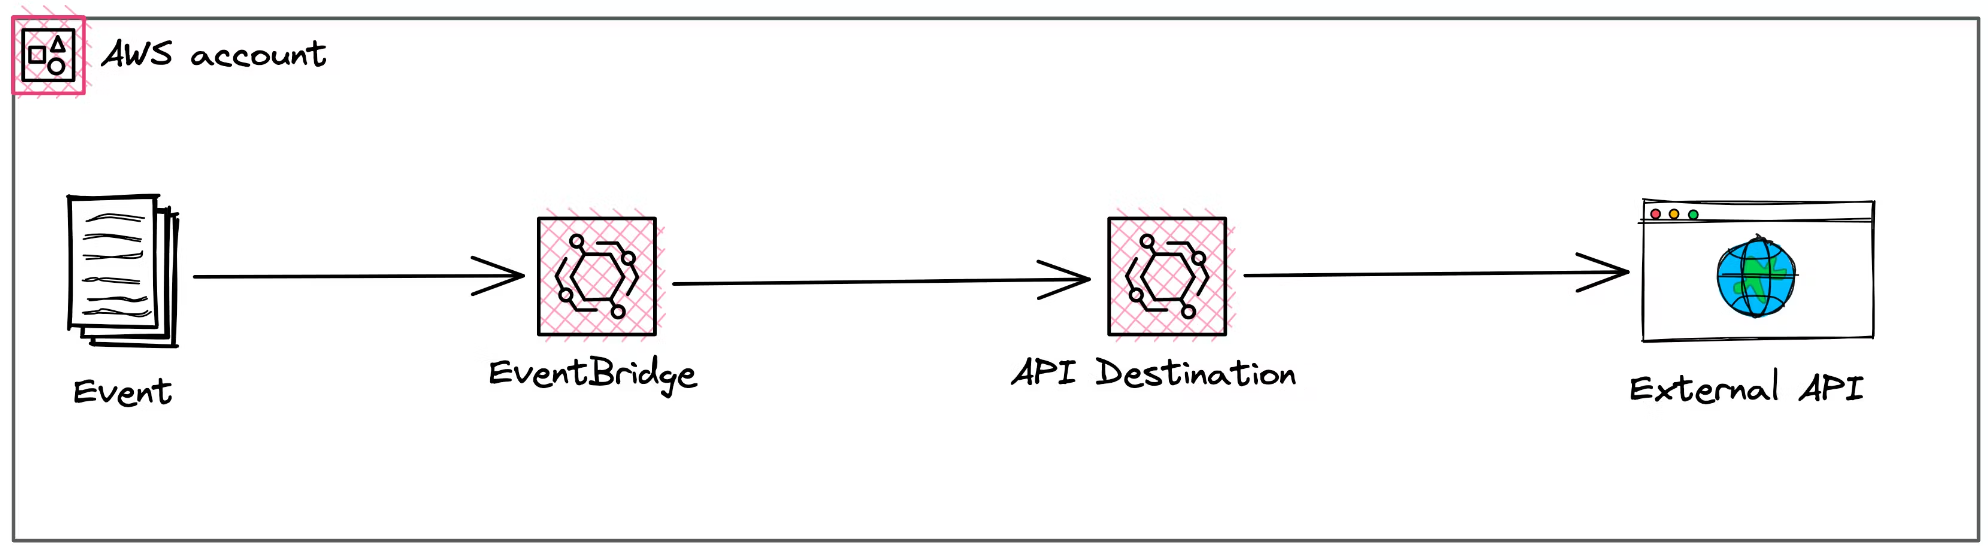 API Destinations in EventBridge